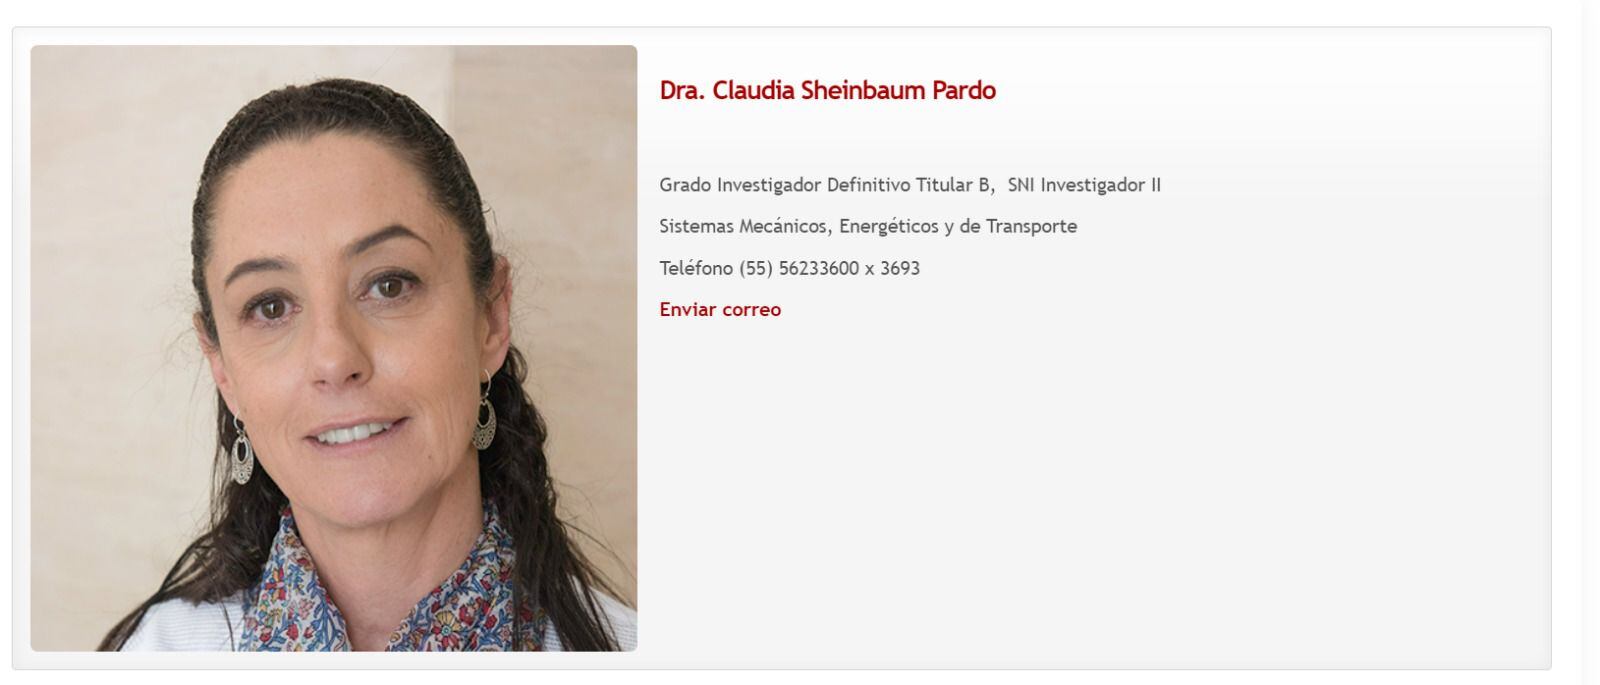 Ficha académica de Sheinbaum en el Instituto de Ingeniería de la UNAM.